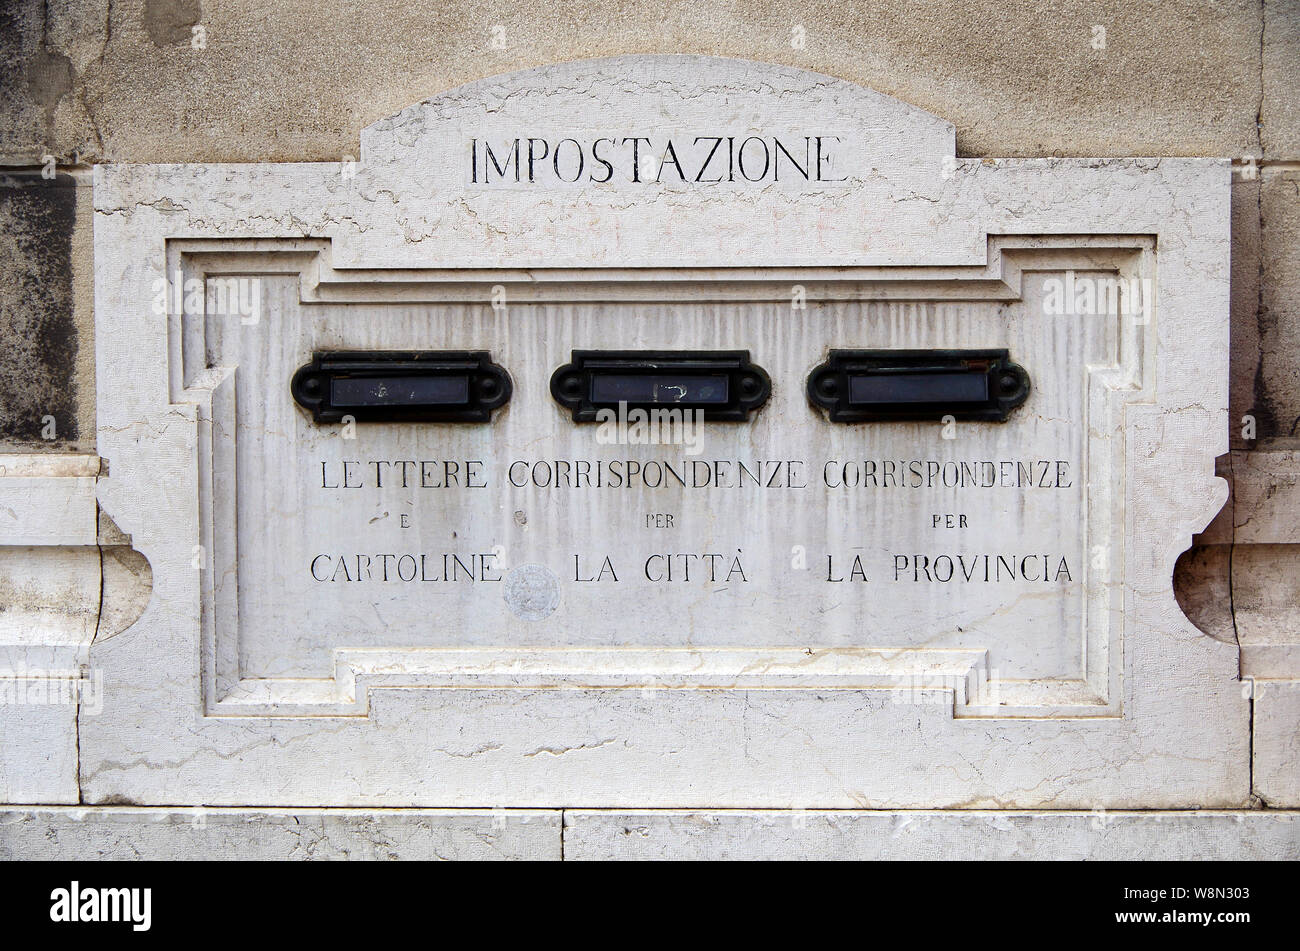 Ein Detail der Briefkästen, Briefkästen, in das Mauerwerk der wichtigsten Front von der Post in Piazza Martiri de Belfiore, Mantua, Italien, Stockfoto